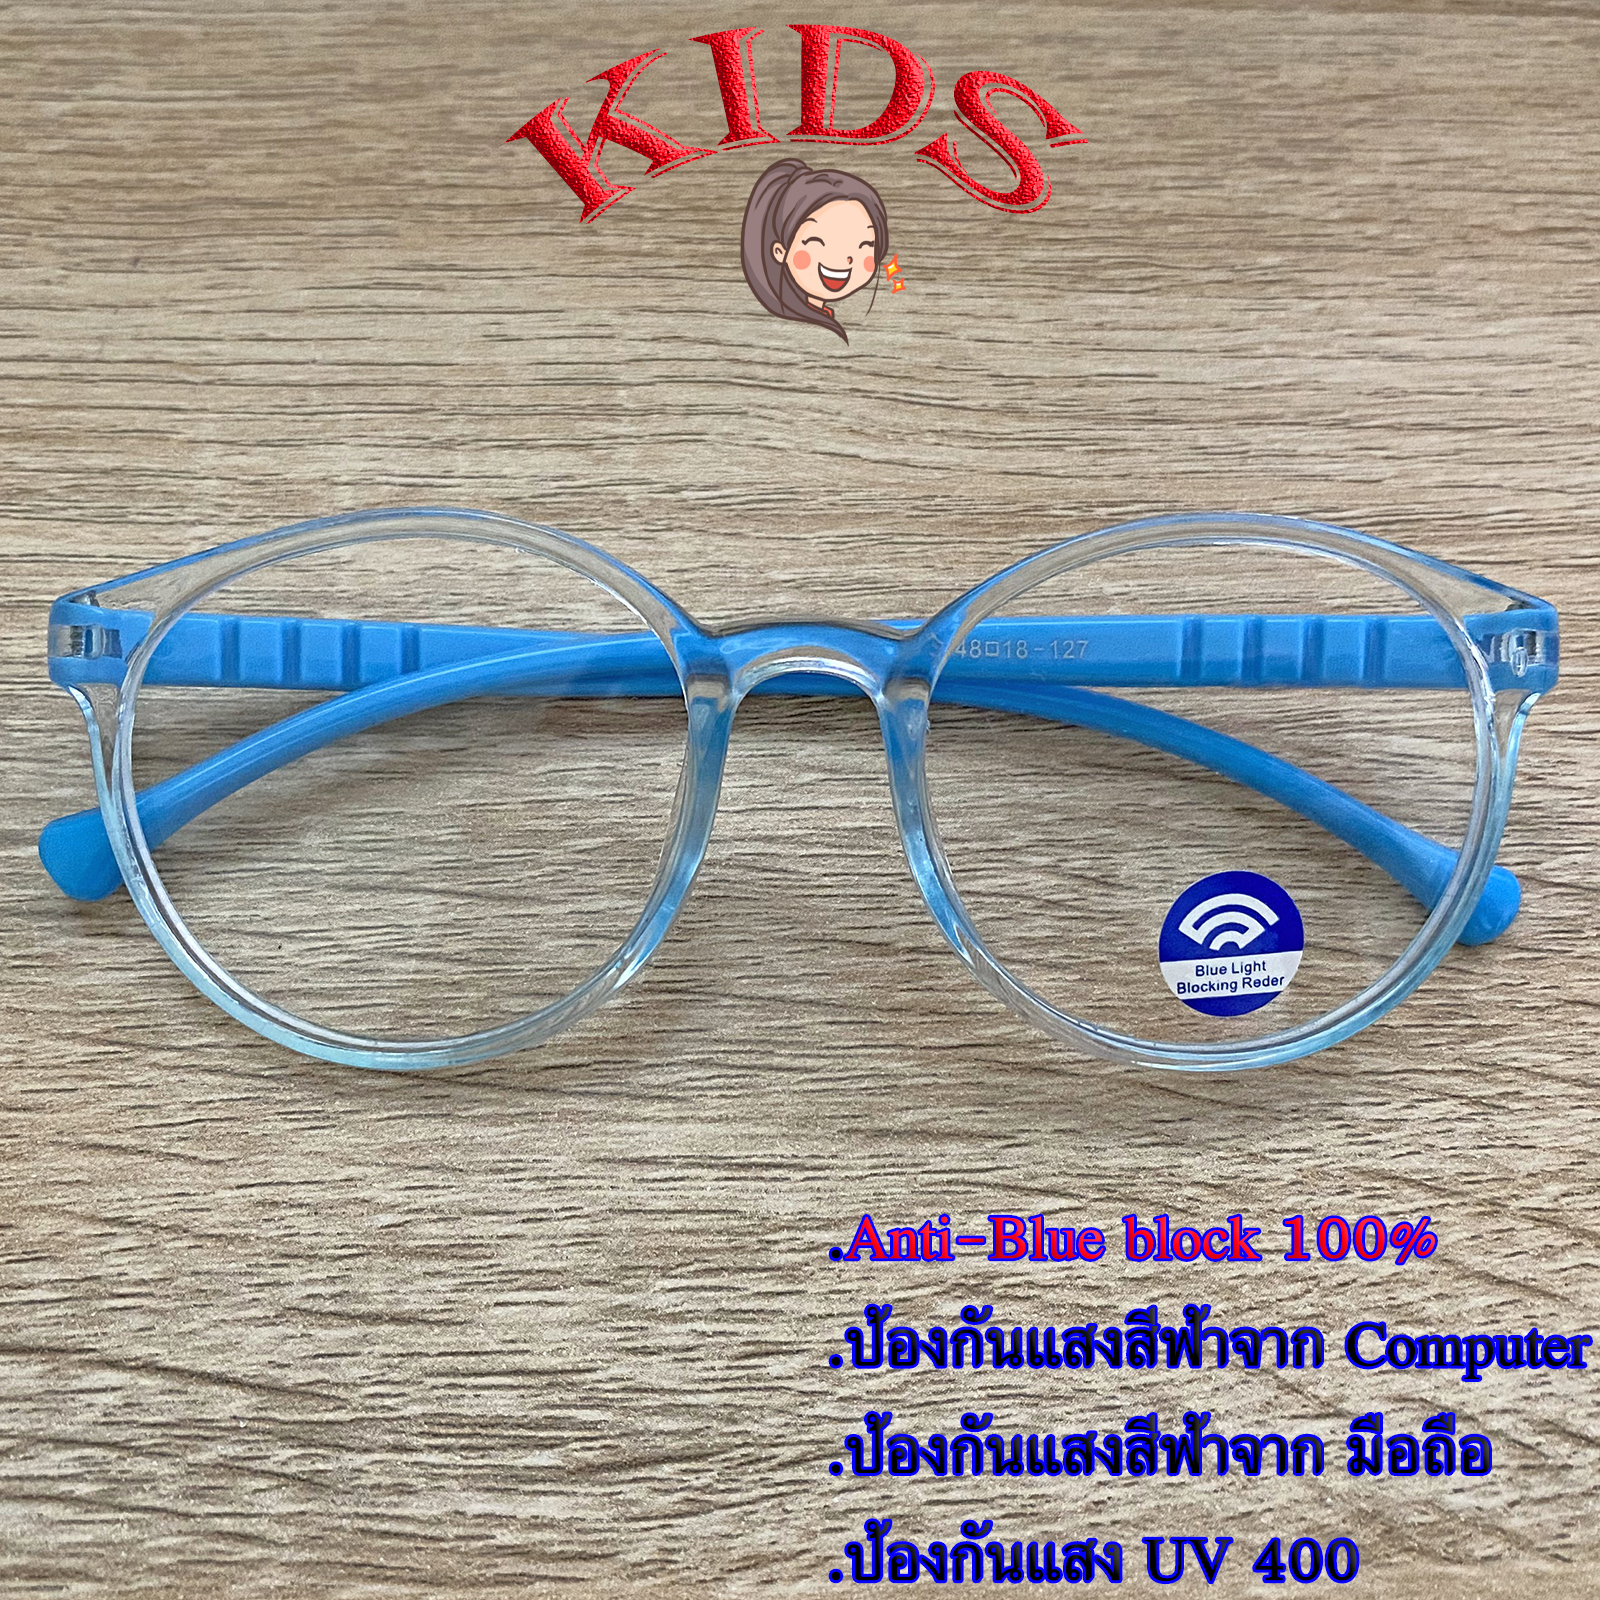 Blue Block แว่นตาเด็ก กรองแสงสีฟ้า กรองแสงคอม รุ่น 1013 สีฟ้ากรอบใส พลาสติก พีซี เกรด เอ ขาข้อต่อ กรองแสงสูงสุด95% กัน UV 100% Glasses